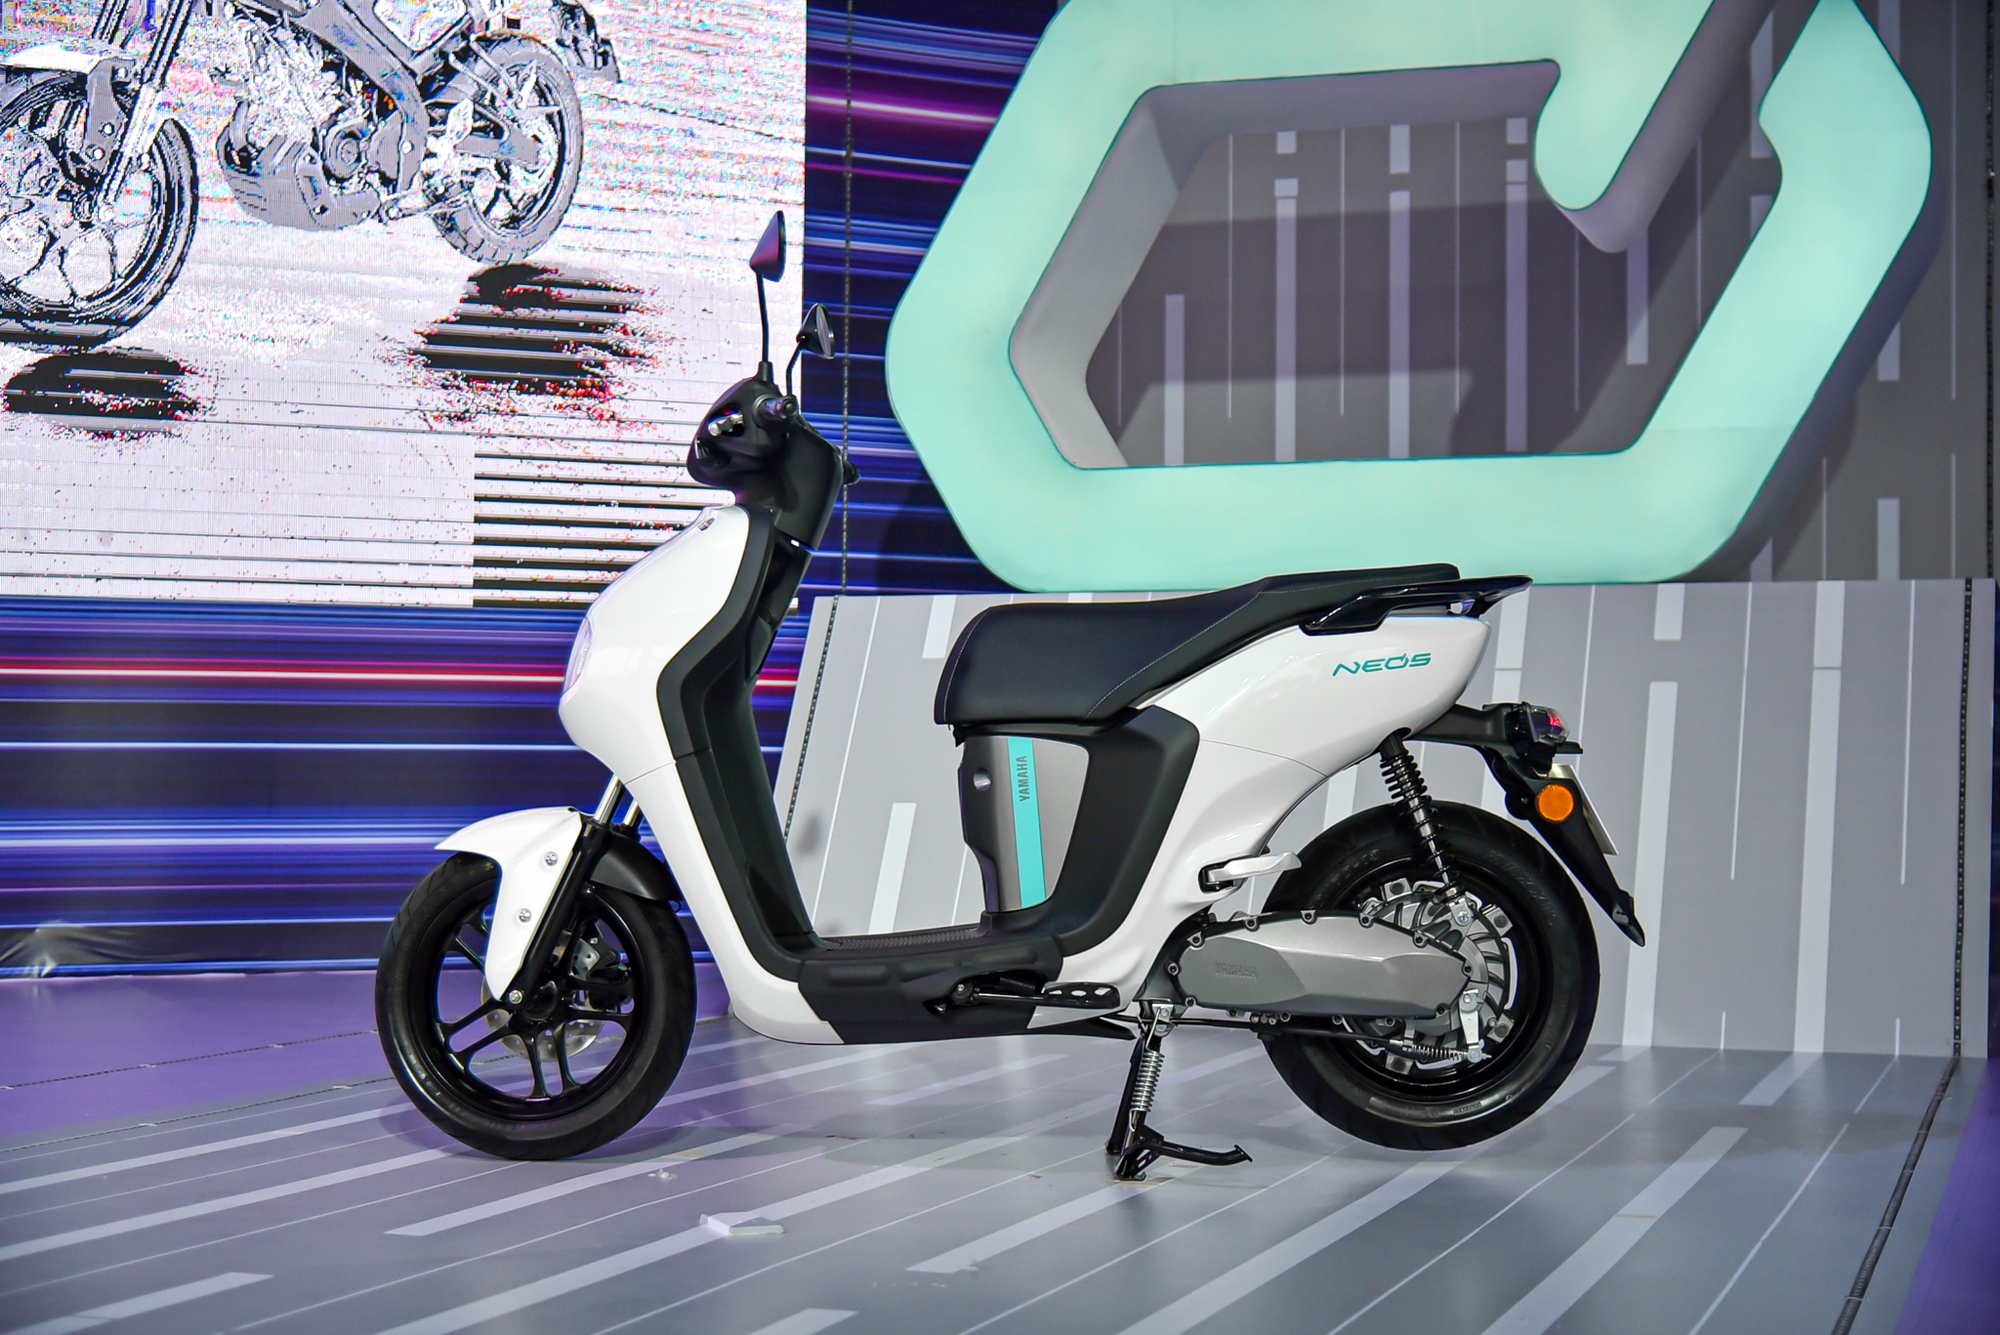 Xe điện Yamaha Neo's mở bán tại Việt Nam: Giá 50 triệu đồng, có thể đi tối đa hơn 140 km/lần sạc - Ảnh 2.